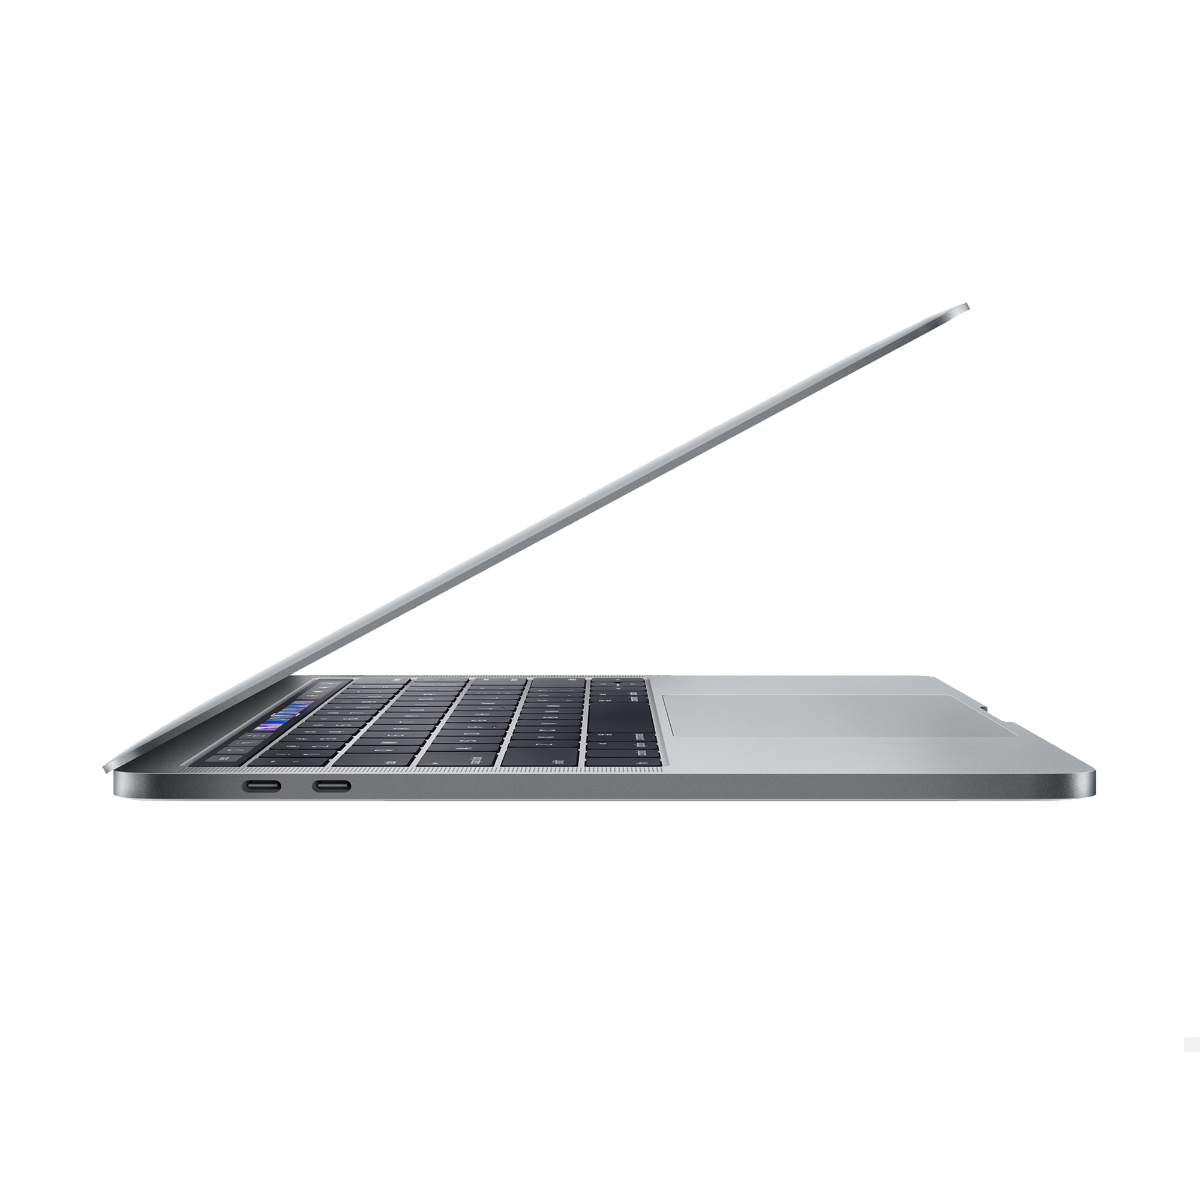 Refurbished MacBook Pro Touchbar 13" i5 2.4 Ghz 8GB 256GB - test-product-media-liquid1